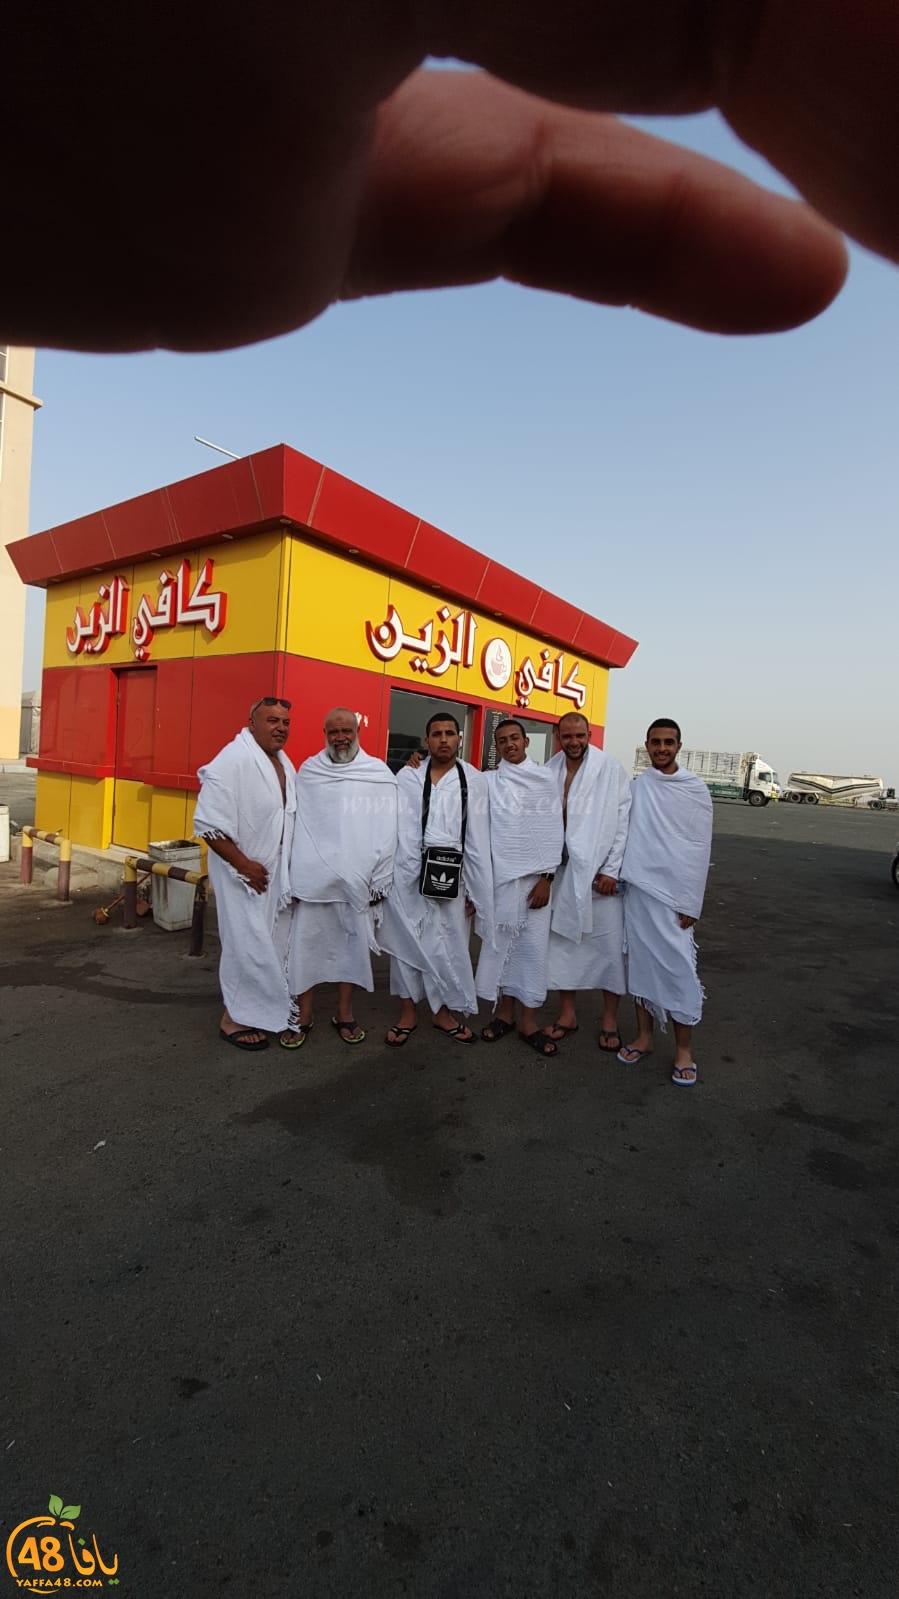    بالصور: معتمرو اللد والرملة الفوج الثاني يصلون إلى مكة المكرّمة 